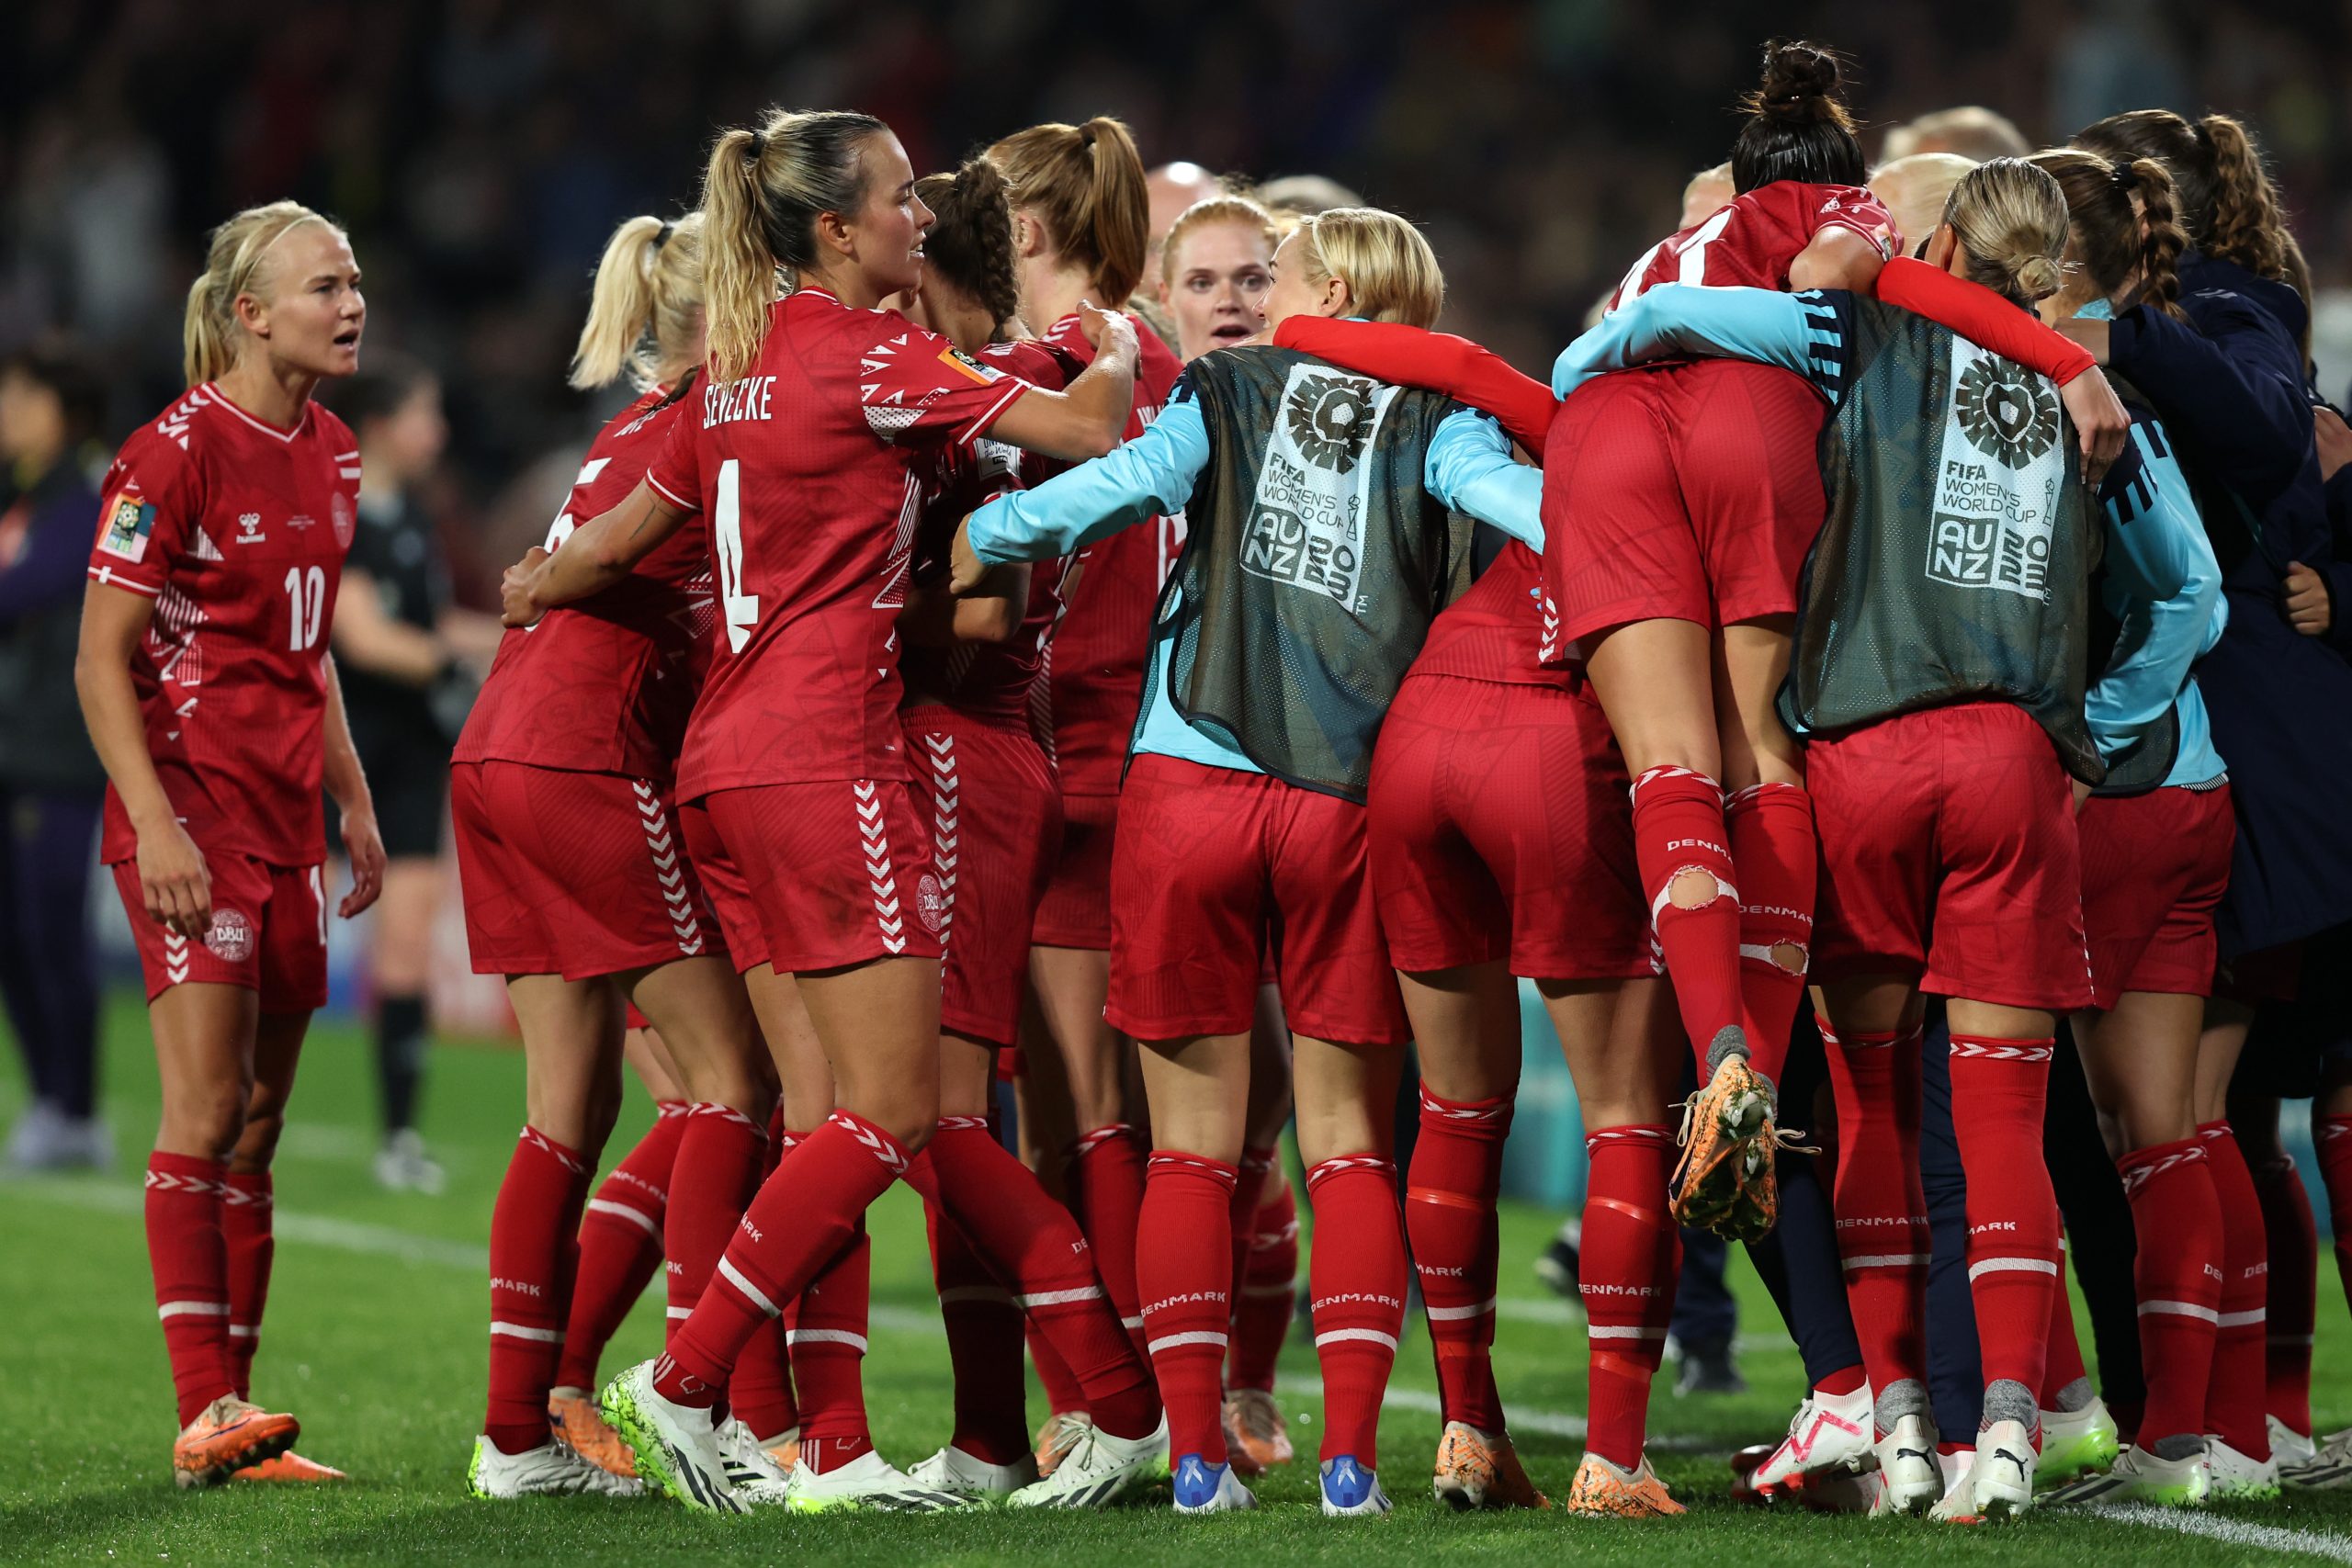 Dinamarquesas celebram gol marcado no final do jogo (Foto: Paul Kane/Getty Images)